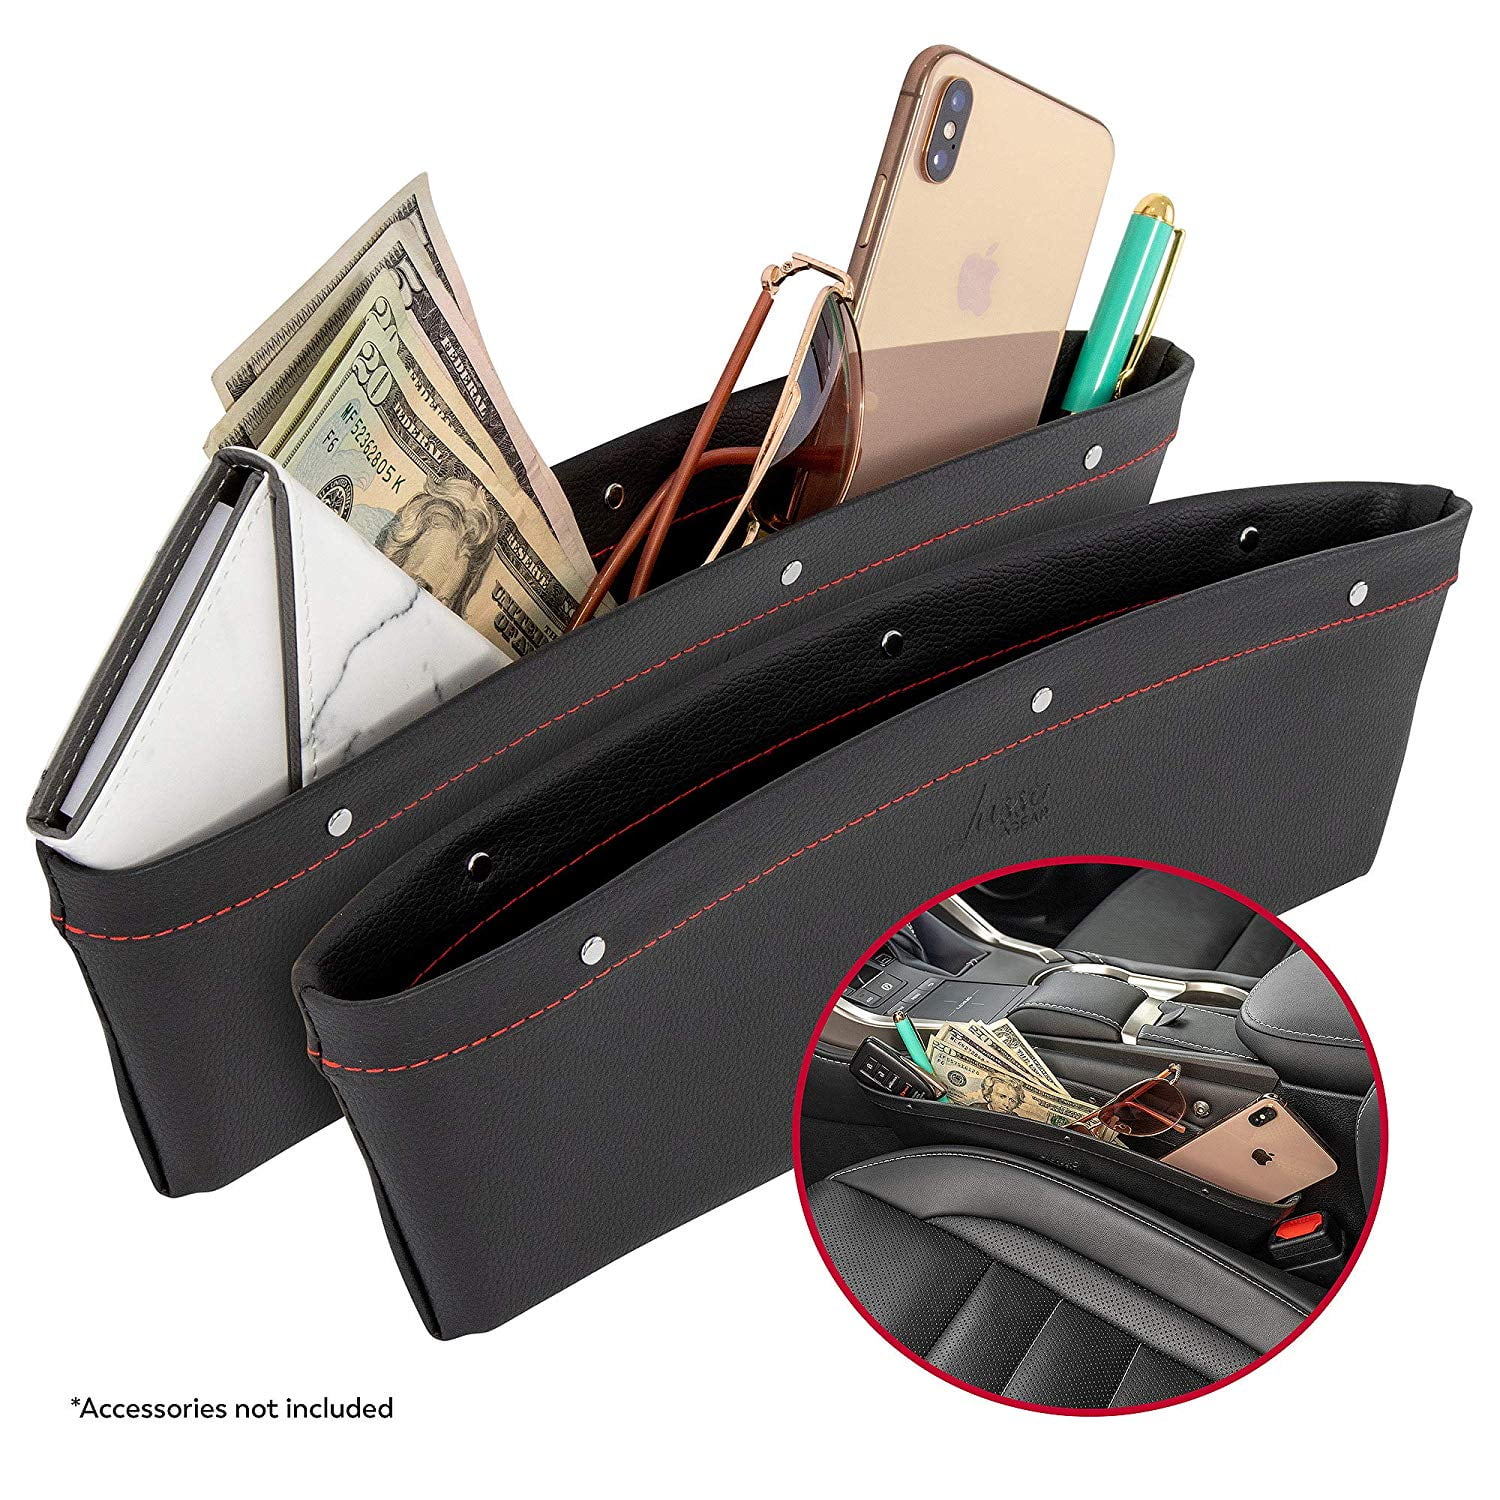 keketuohai Leather Car Seat Gap Storage Box 2 Pack Car Seat Pocket